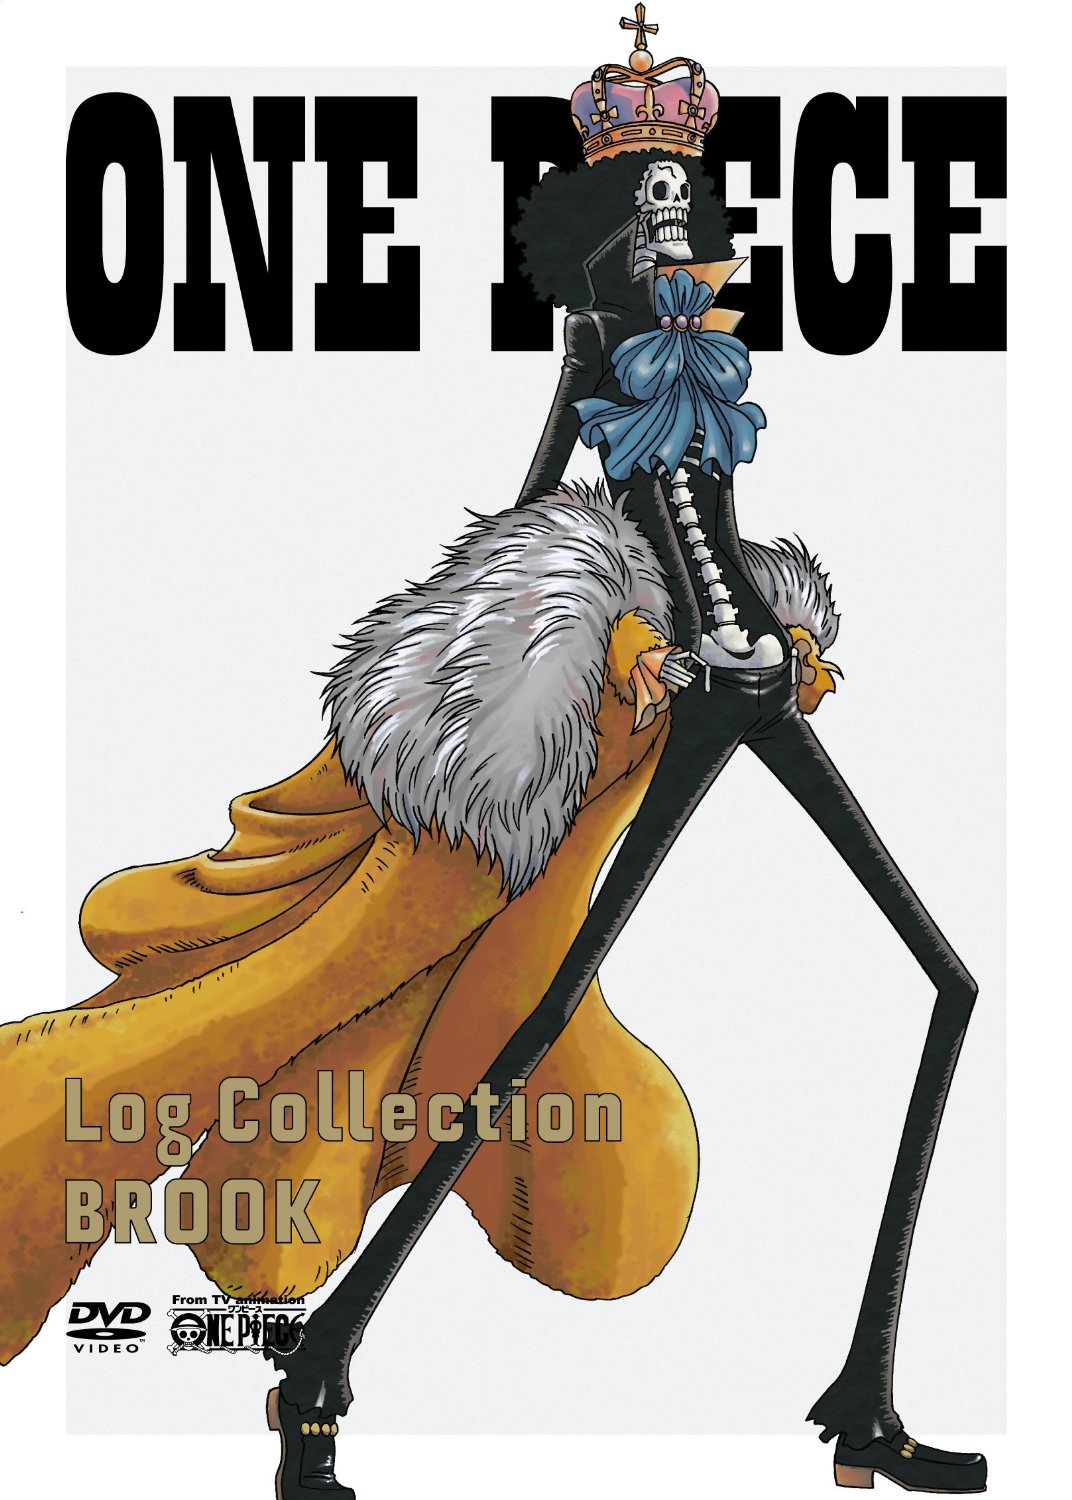 アニメキャラの魅力 友との再会を夢見て 50年の孤独に耐えた ブルック の魅力とは One Piece 2015年3月3日 エキサイトニュース 2 2